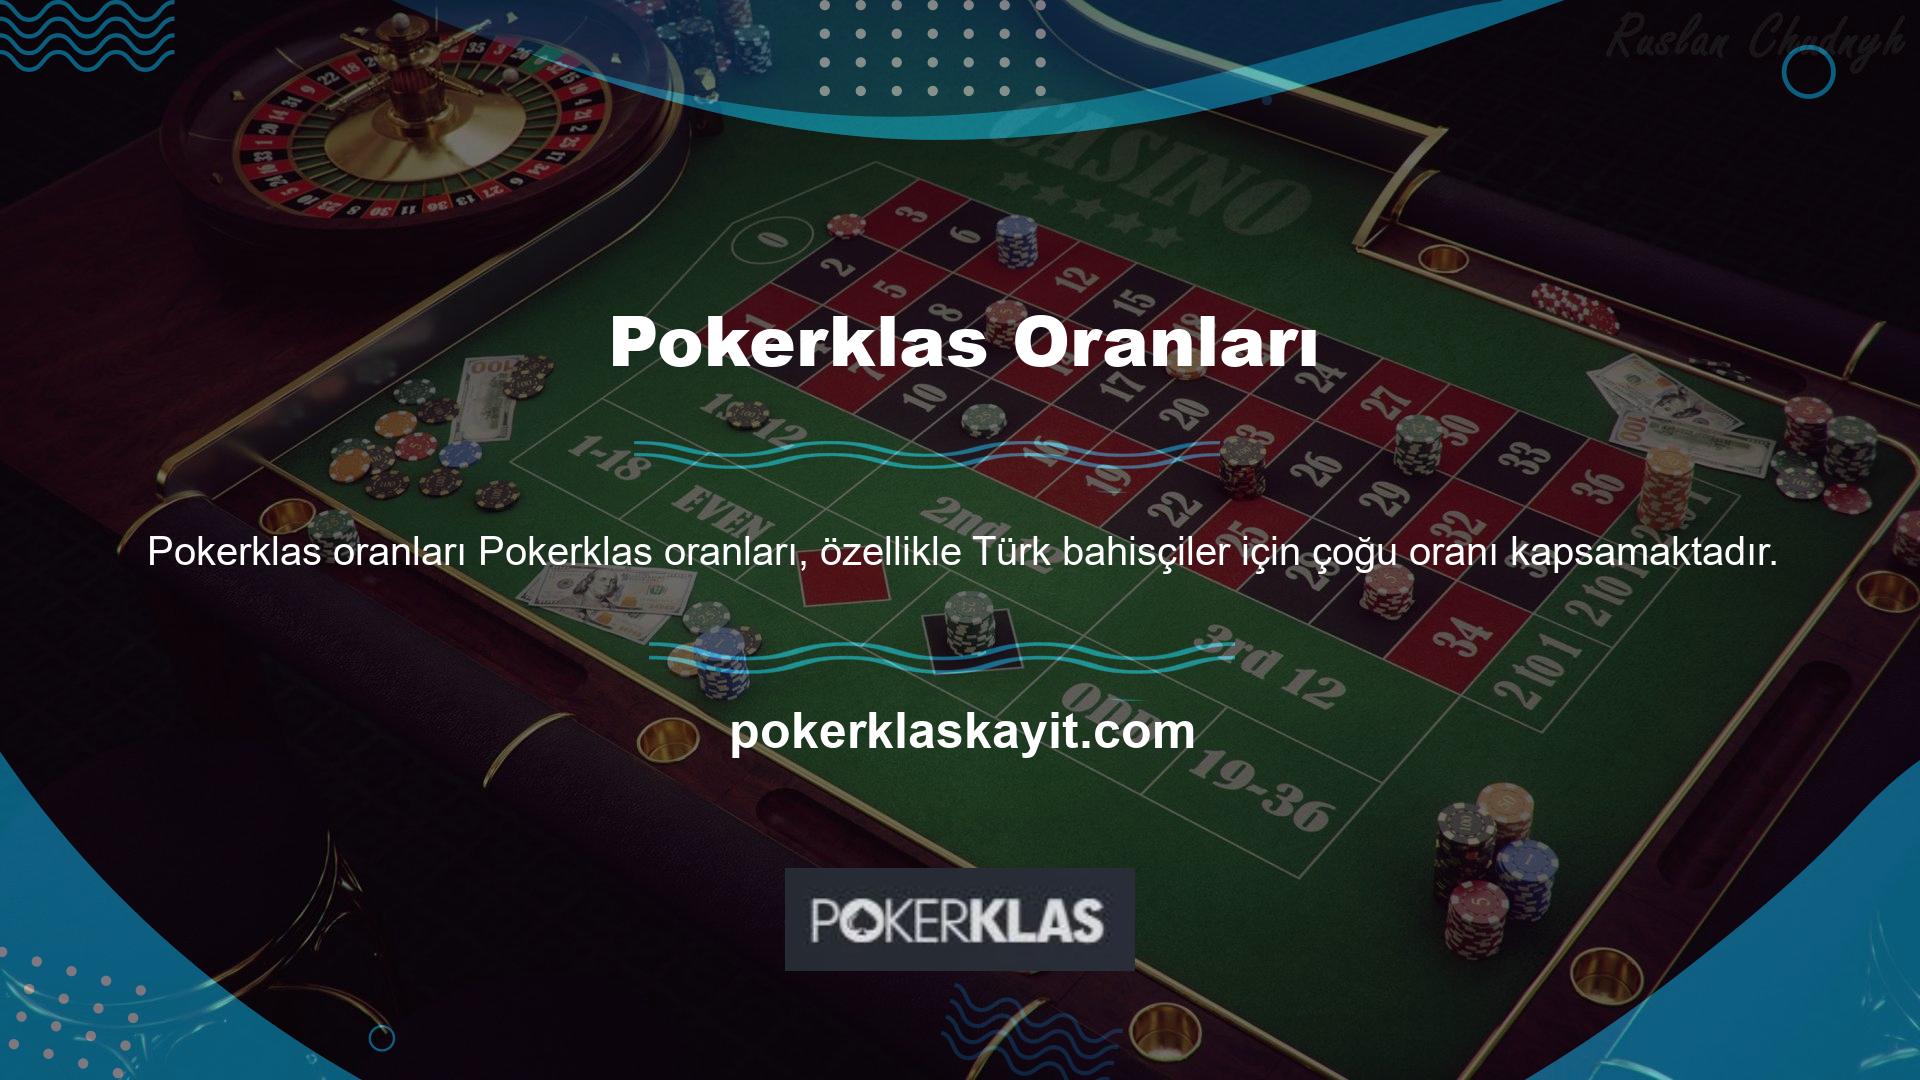 Ülkemizde bahis oranlarının düşük olması nedeniyle Pokerklas online casinonunı tercih edenlerin sayısı artıyor